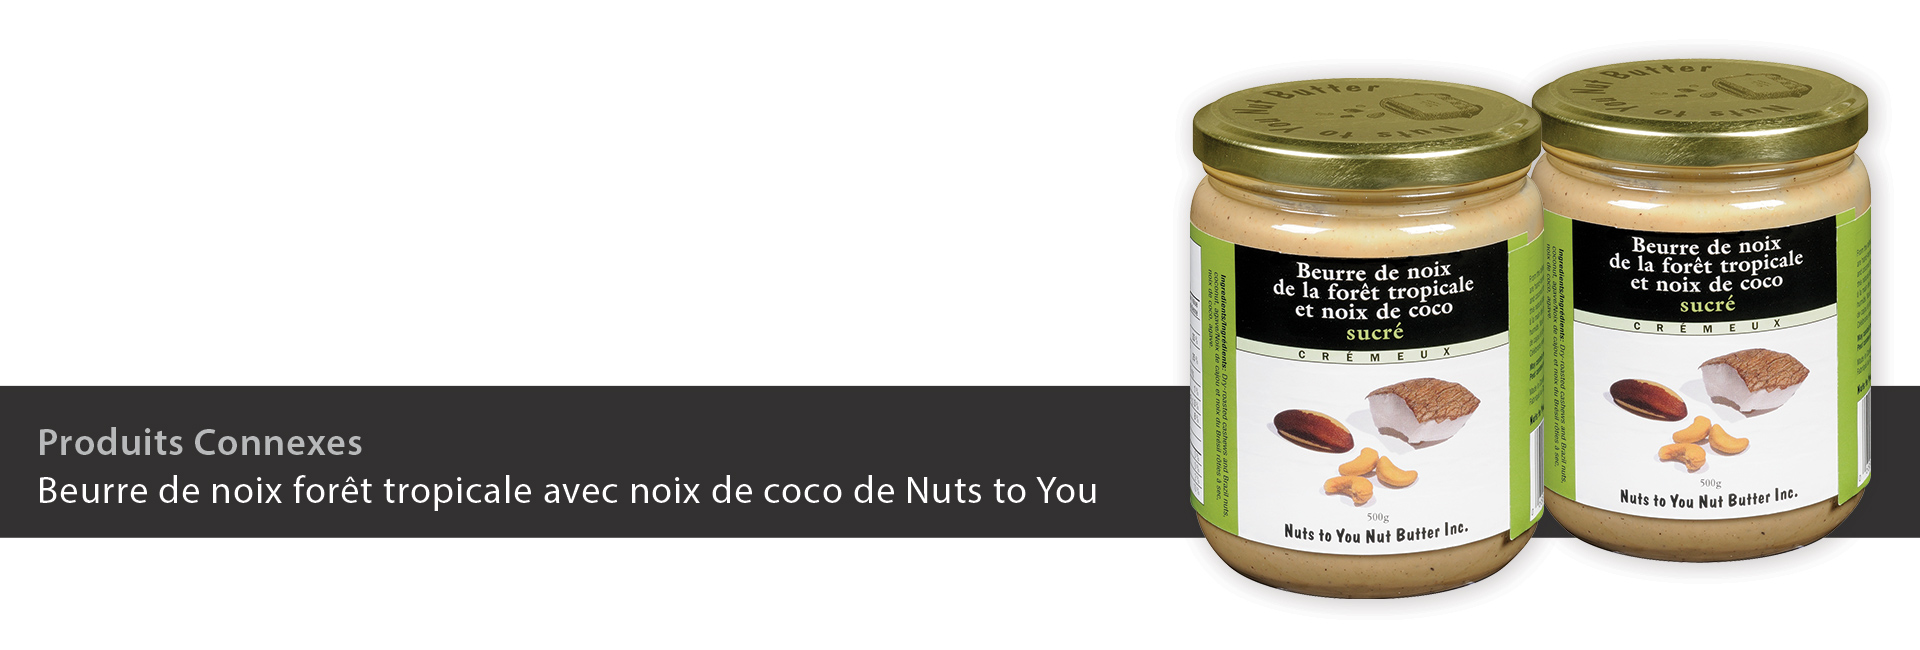 Beurre de noix forêt tropicale avec noix de coco de Nuts to You